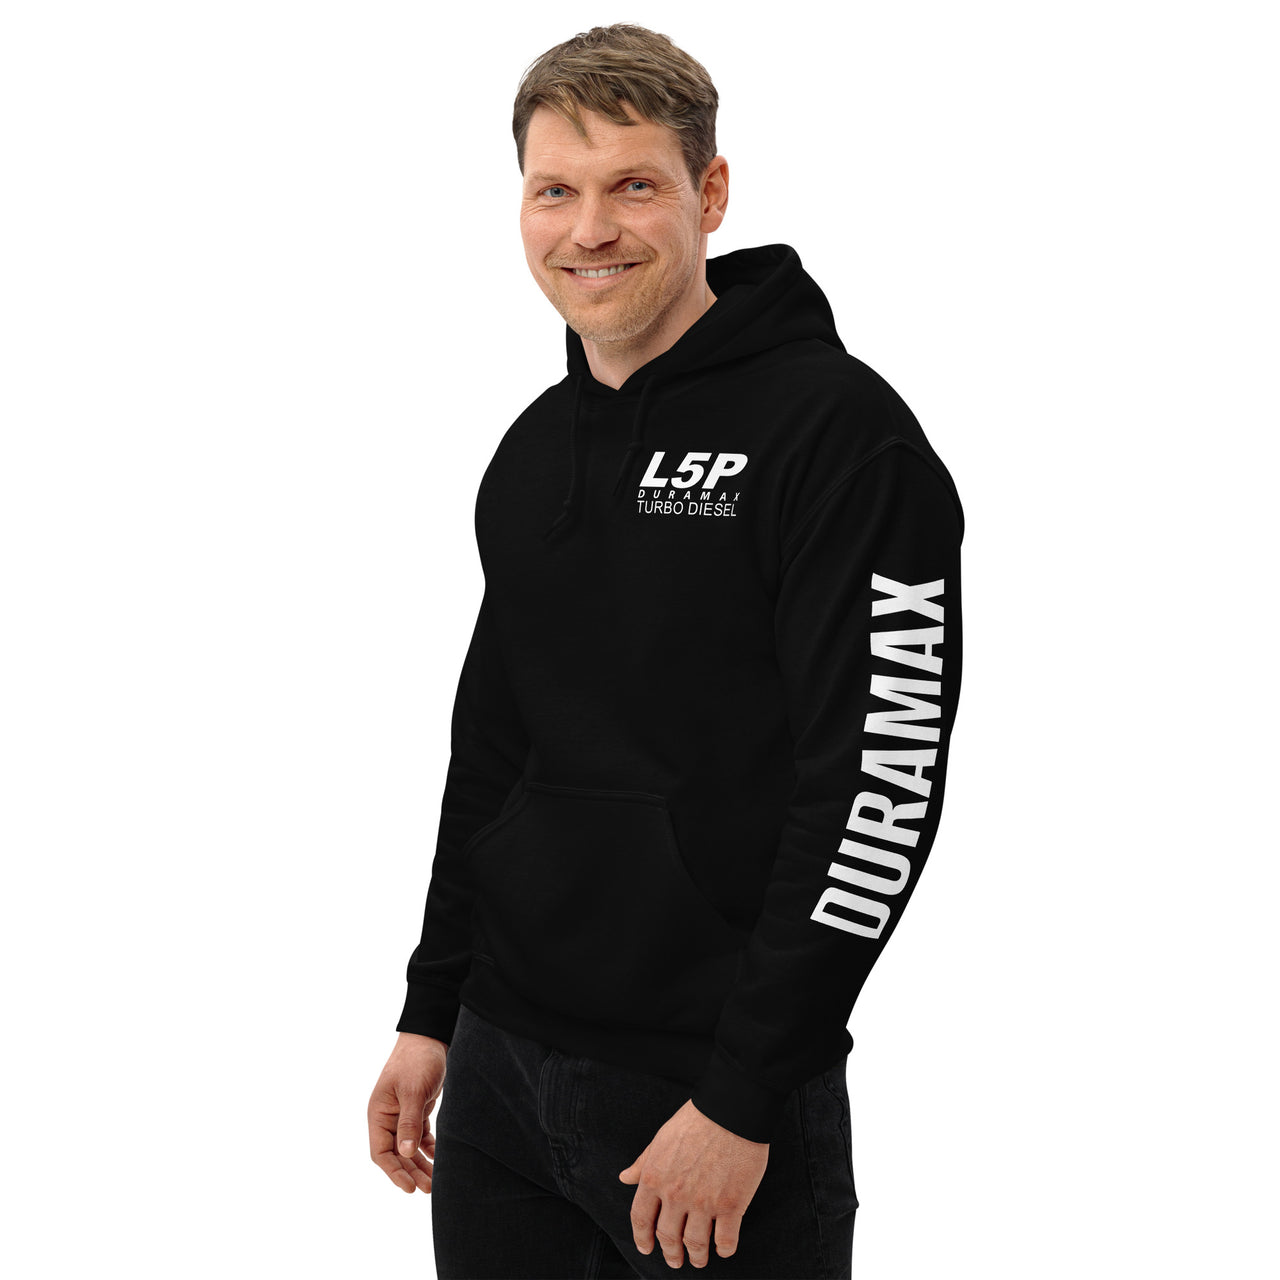 L5P Duramax Hoodie Pullover Sweatshirt With Sleeve Print - modeled in black